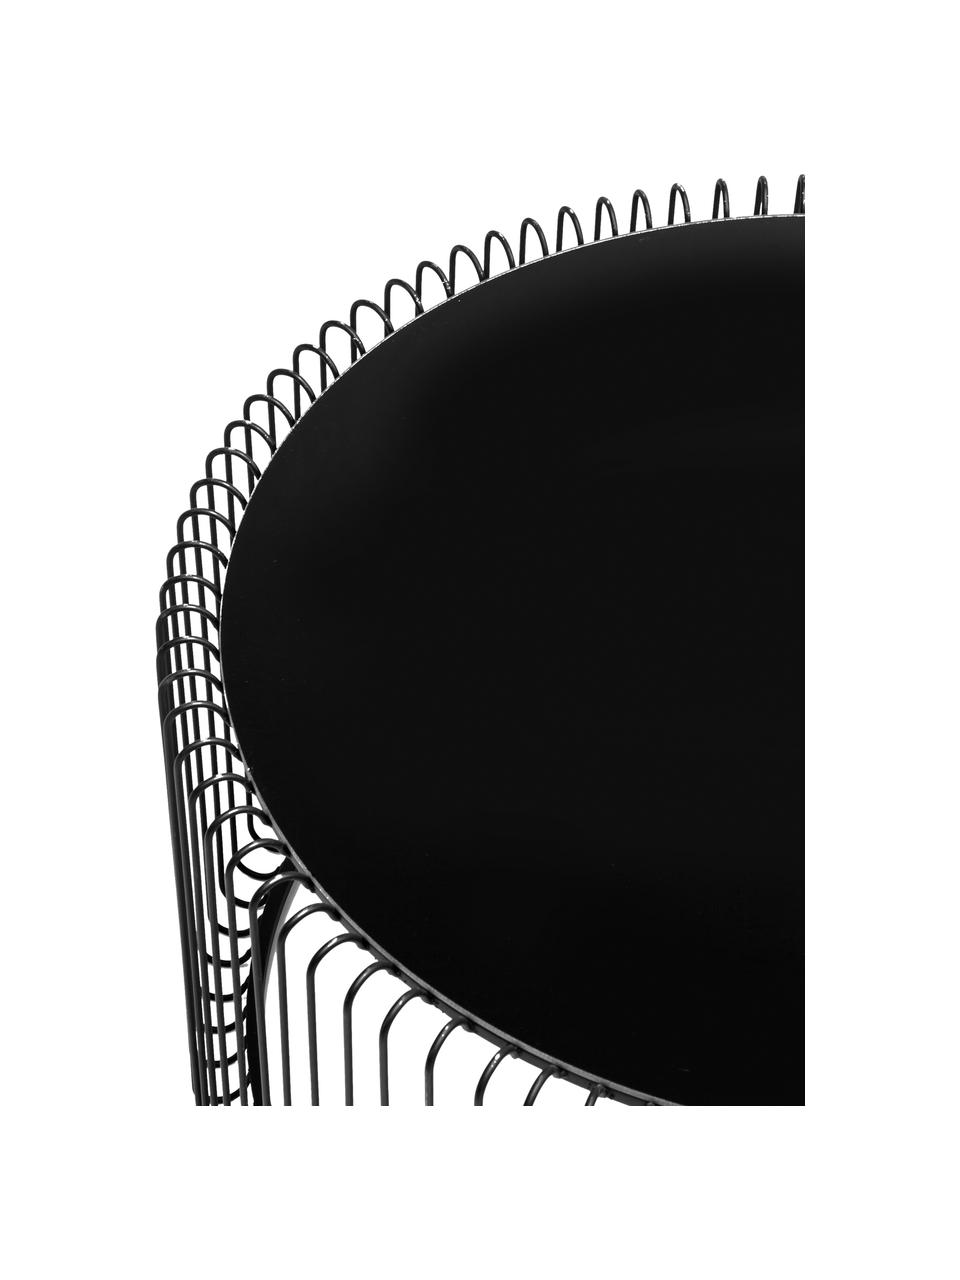 Couchtisch-Set Wire mit Glasplatte, 2er-Set, Gestell: Metall, pulverbeschichtet, Tischplatte: Sicherheitsglas, foliert, Schwarz, Set mit verschiedenen Größen